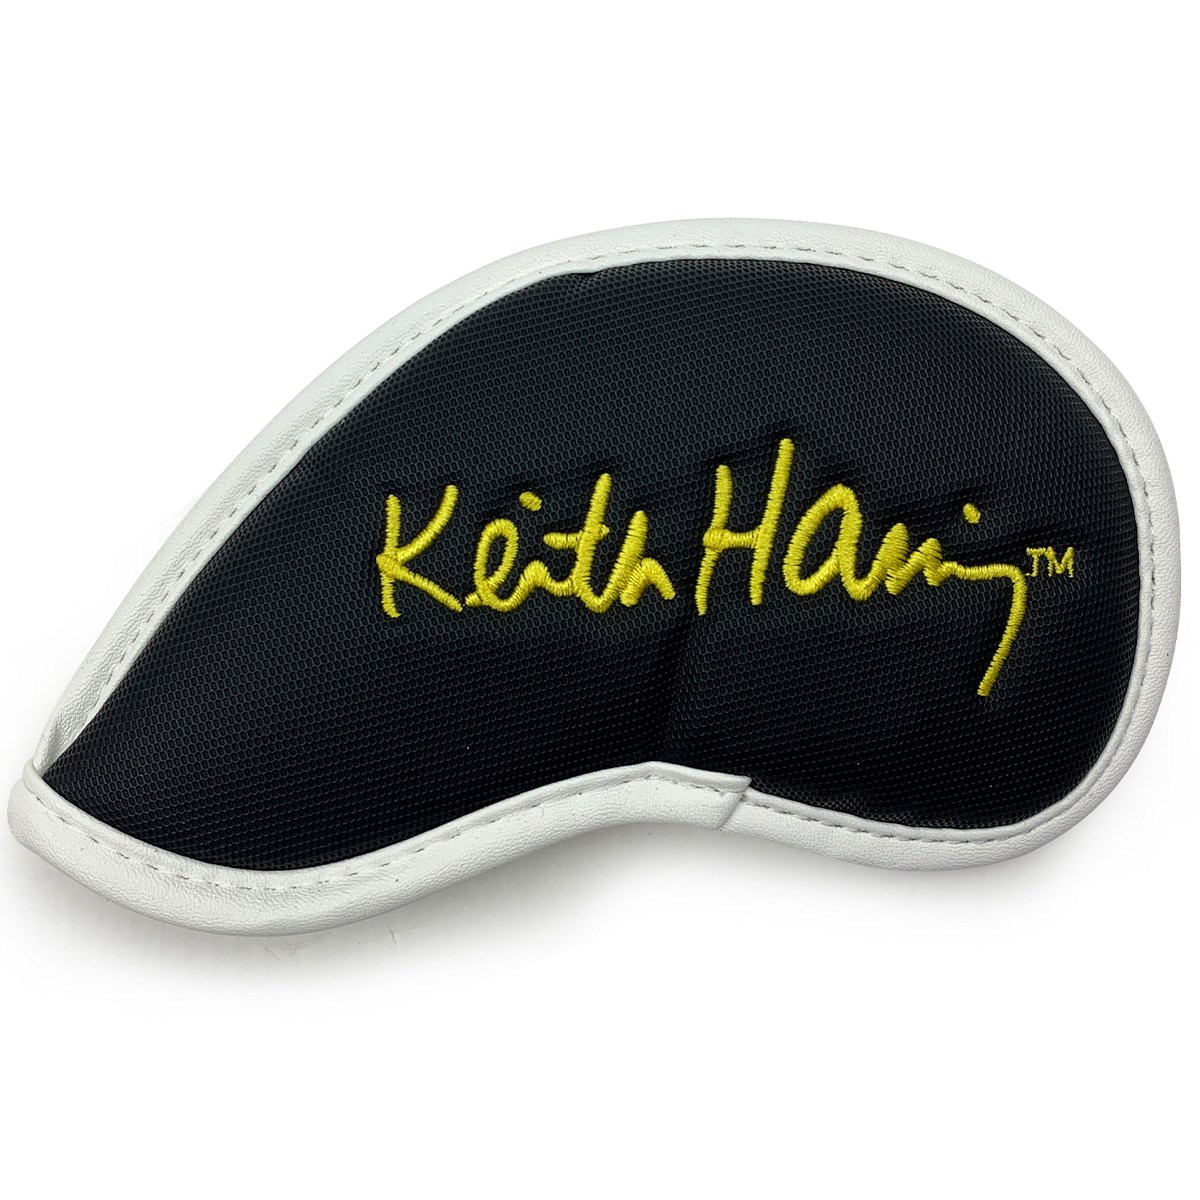 dショッピング |キース・ヘリング Keith Haring アイアンカバー 